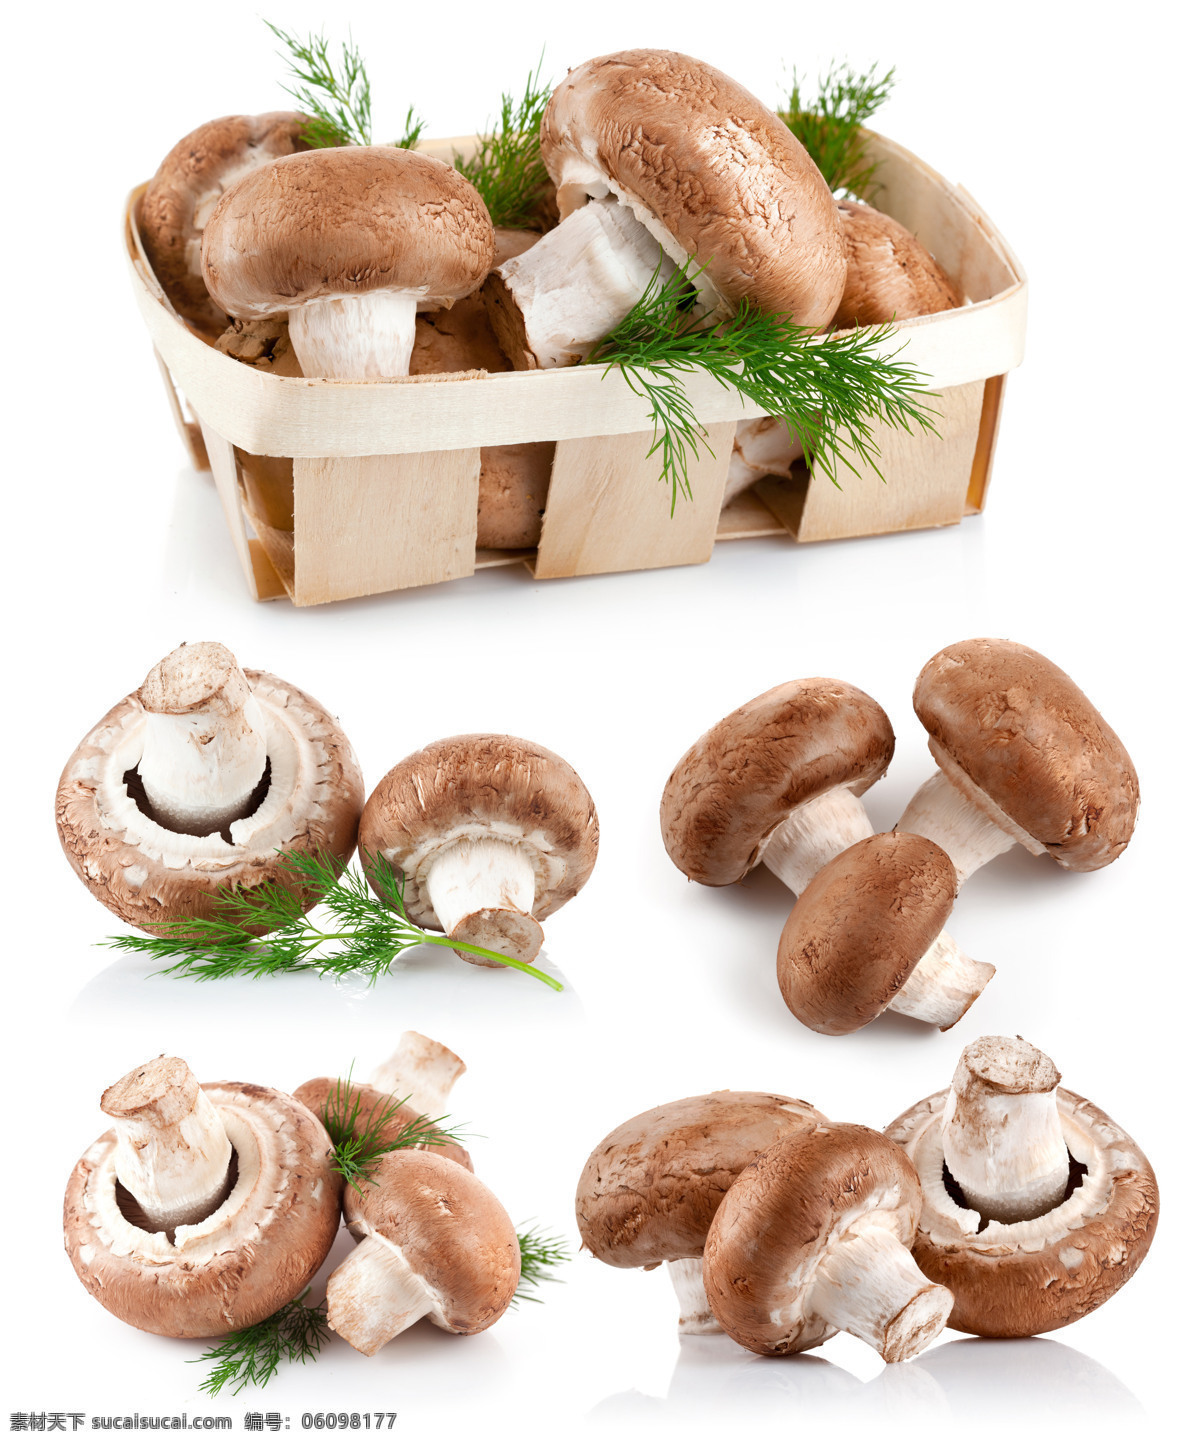 香菇 香菇图片素材 香菇图片下载 蘑菇 食物 蔬菜 餐厅美食 食材原料 水果蔬菜 餐饮美食 白色